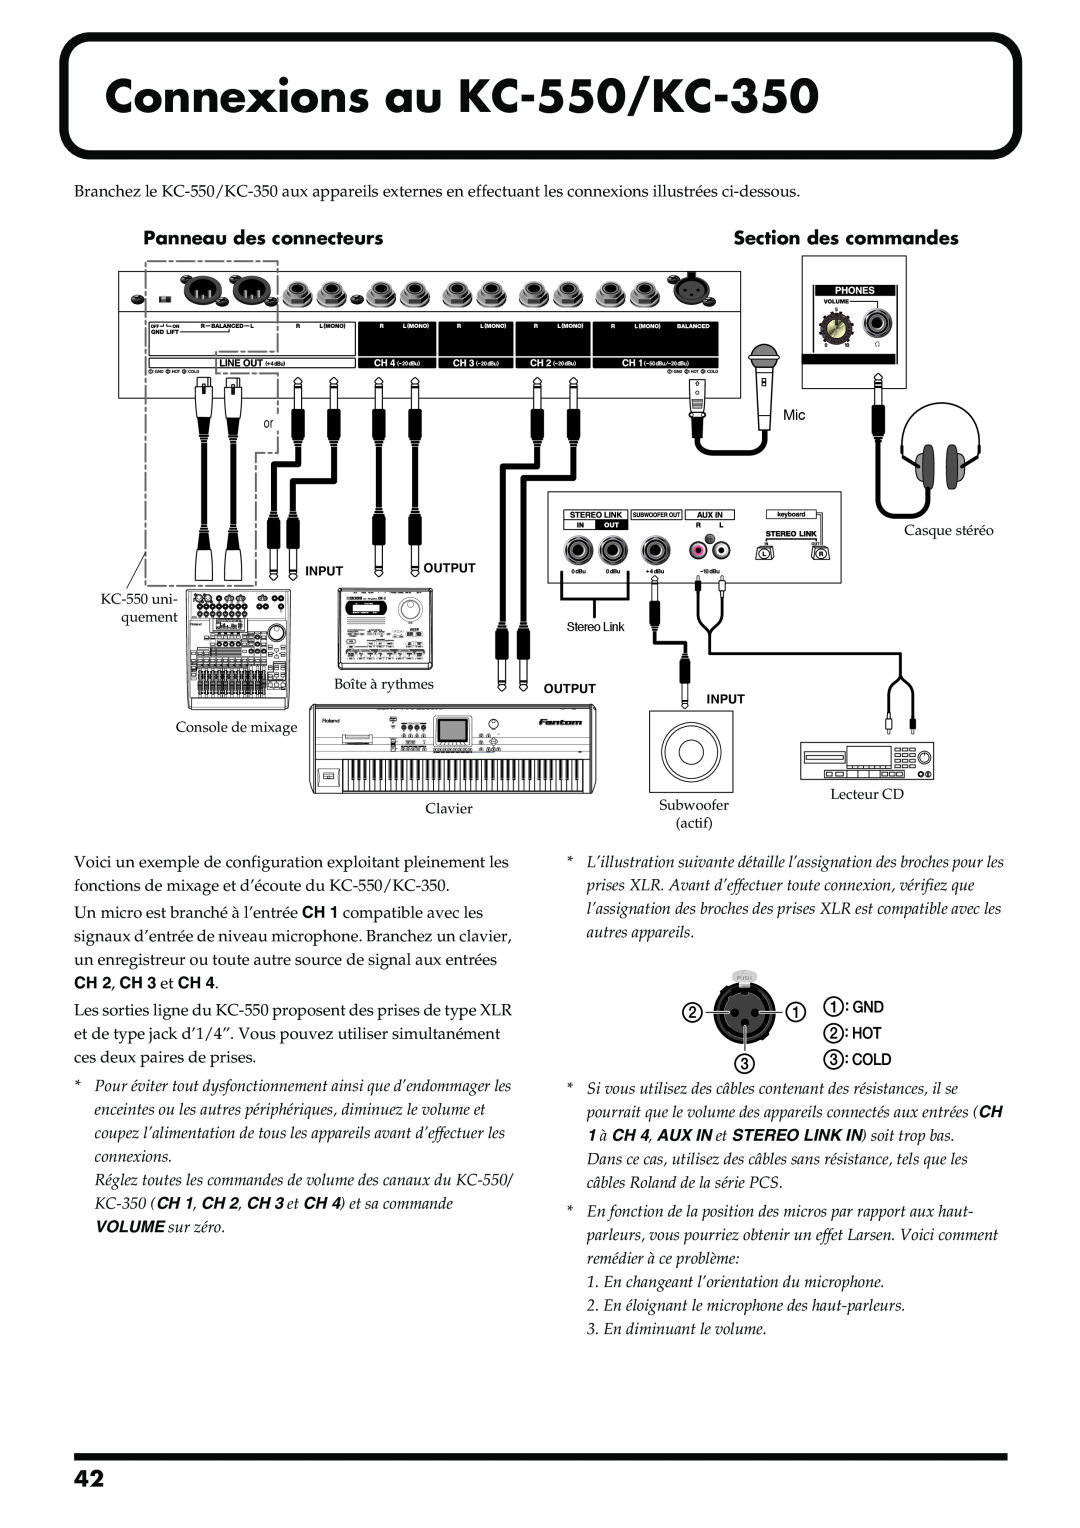 Roland manual Connexions au KC-550/KC-350, Panneau des connecteurs, Section des commandes 